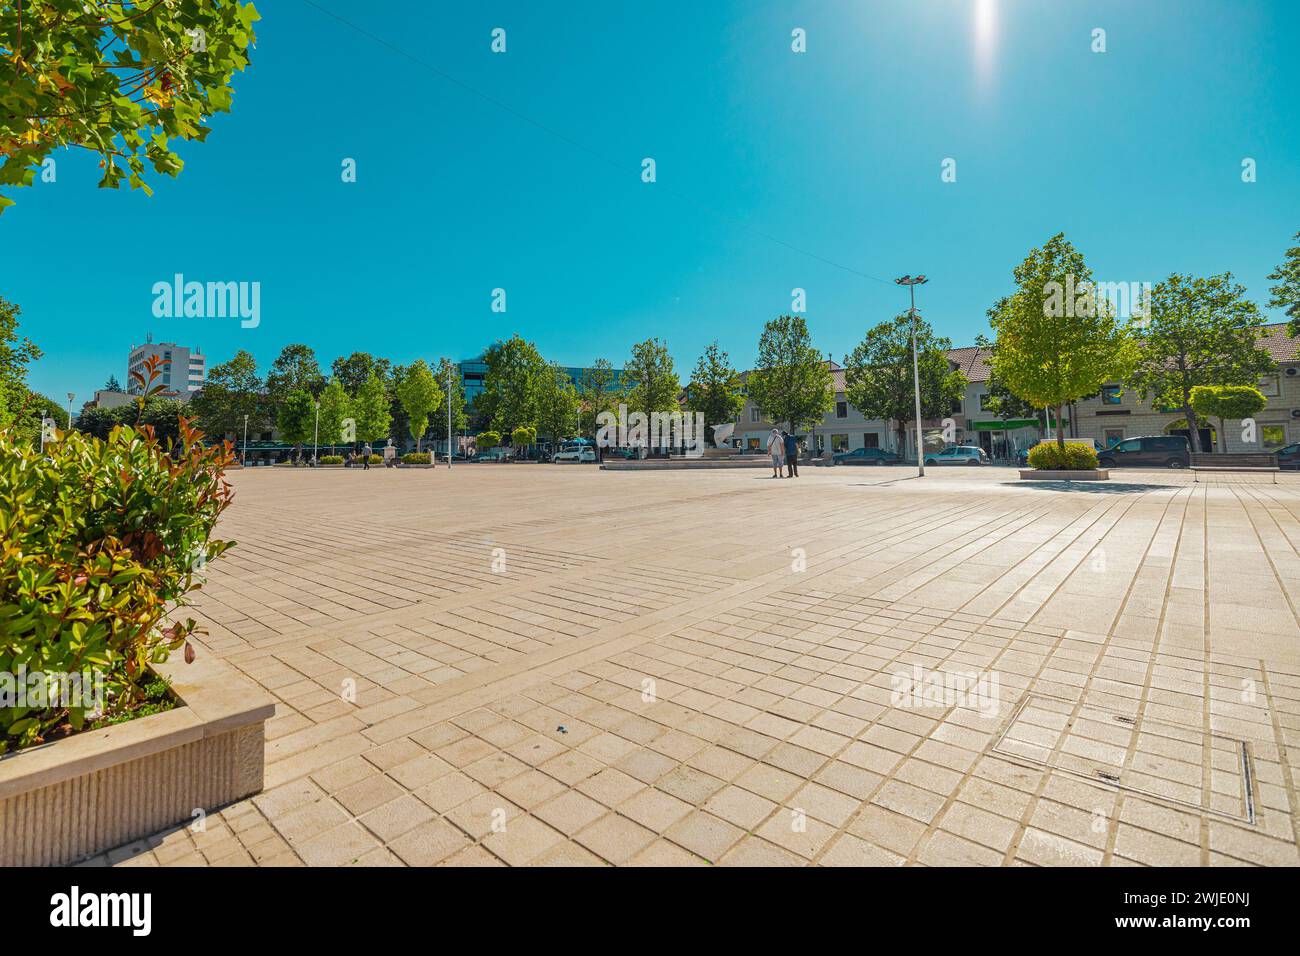 TRG Slobode oder Freiheitsplatz im Zentrum von Niksic, Montenegro an einem sonnigen Tag. Flaches Freigelände im Zentrum einer Stadt, umgeben von Bäumen und Fol Stockfoto